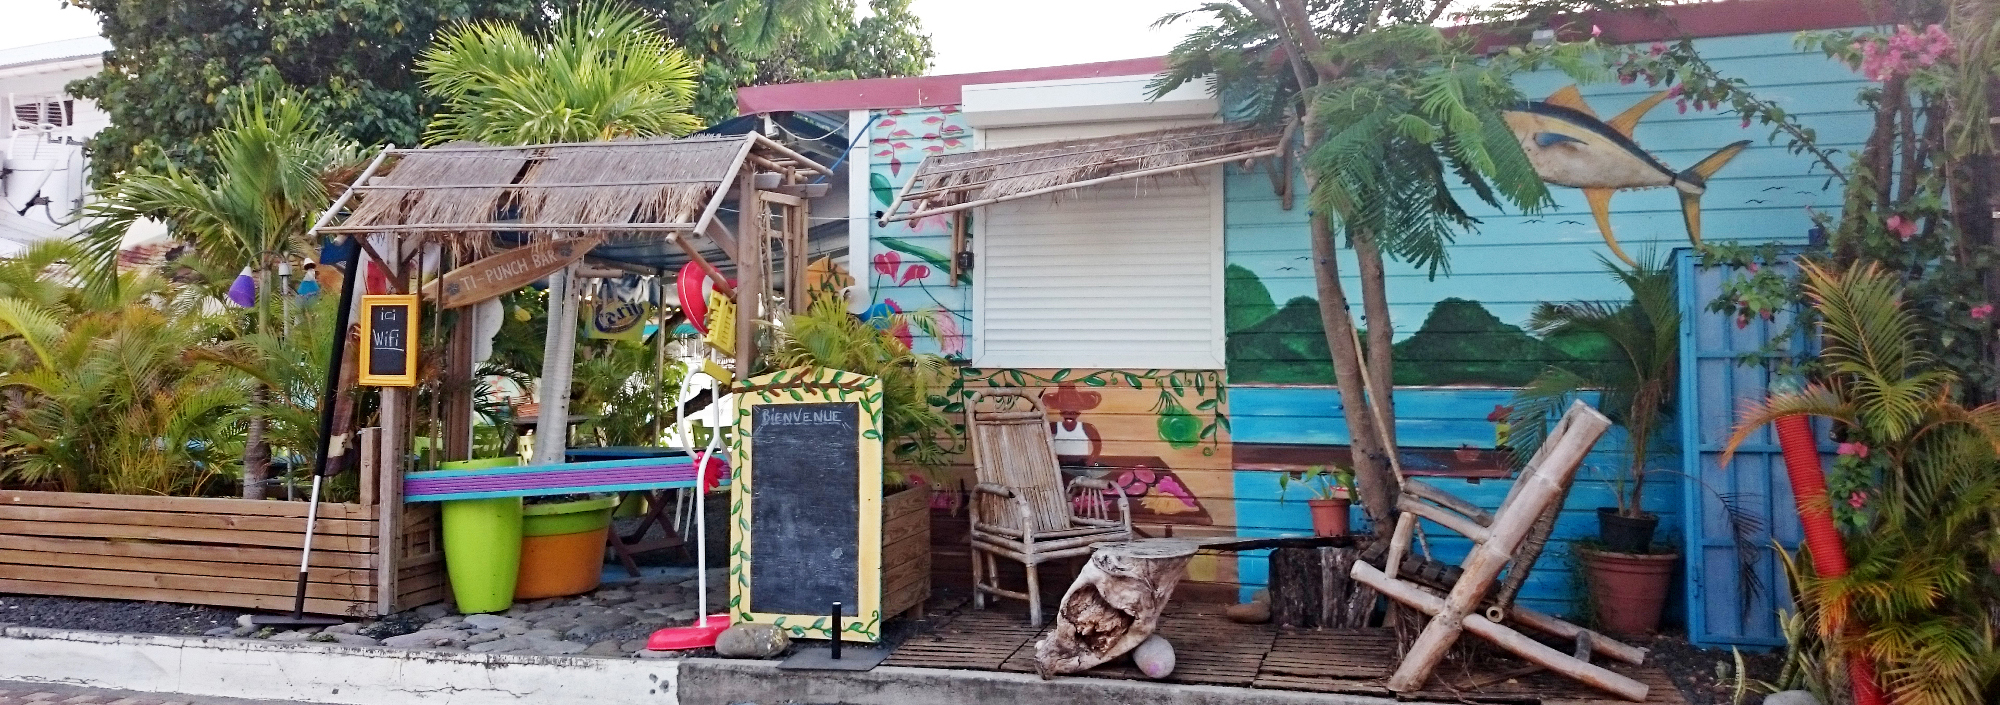 Eingang zu einer Strandbar auf Guadeloupe, farbenfroh gestaltet